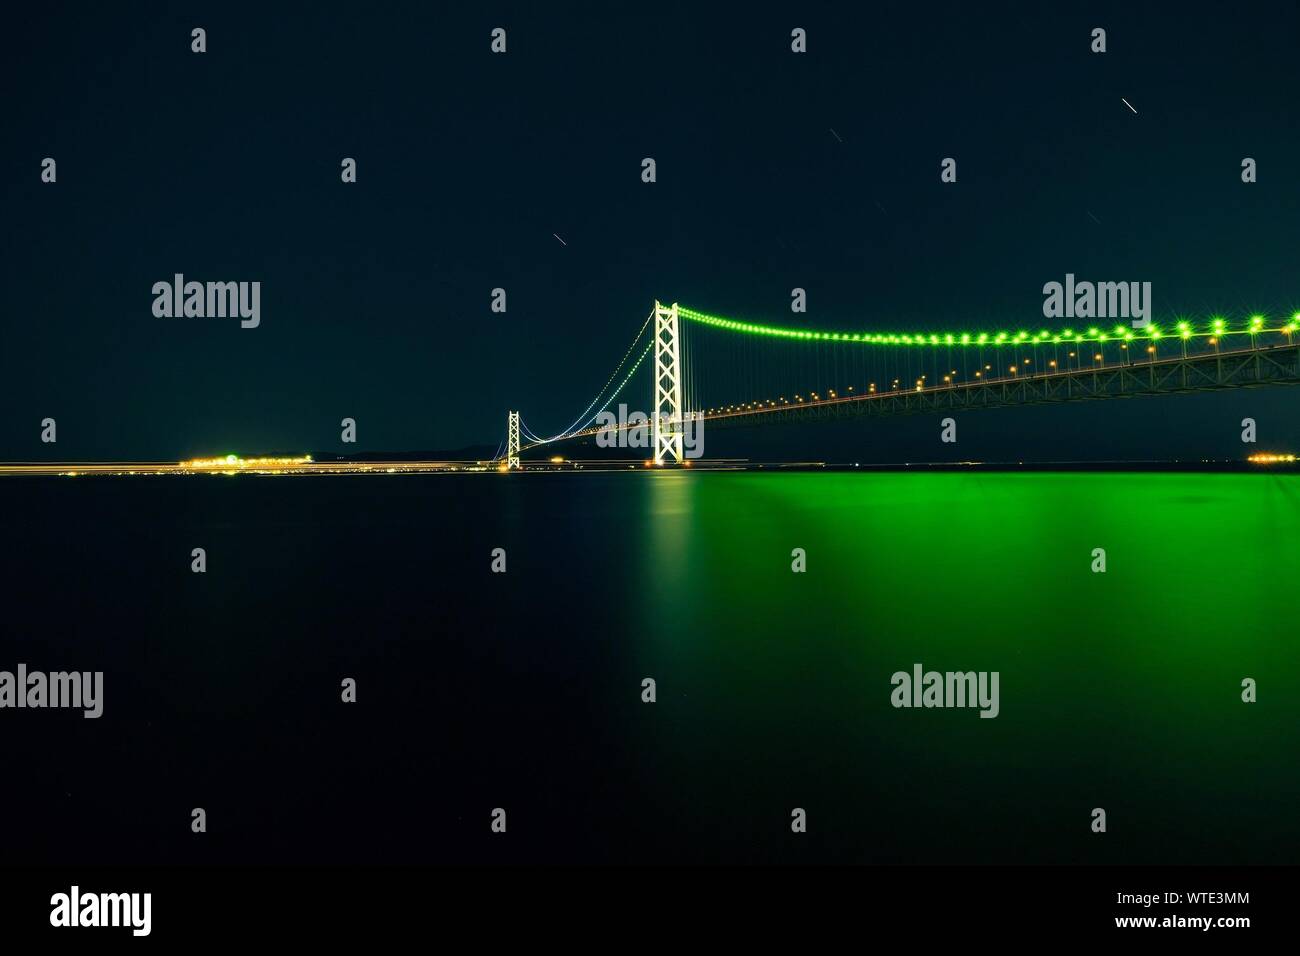 Illuminated Akashi Strait Bridge At Night Stock Photo